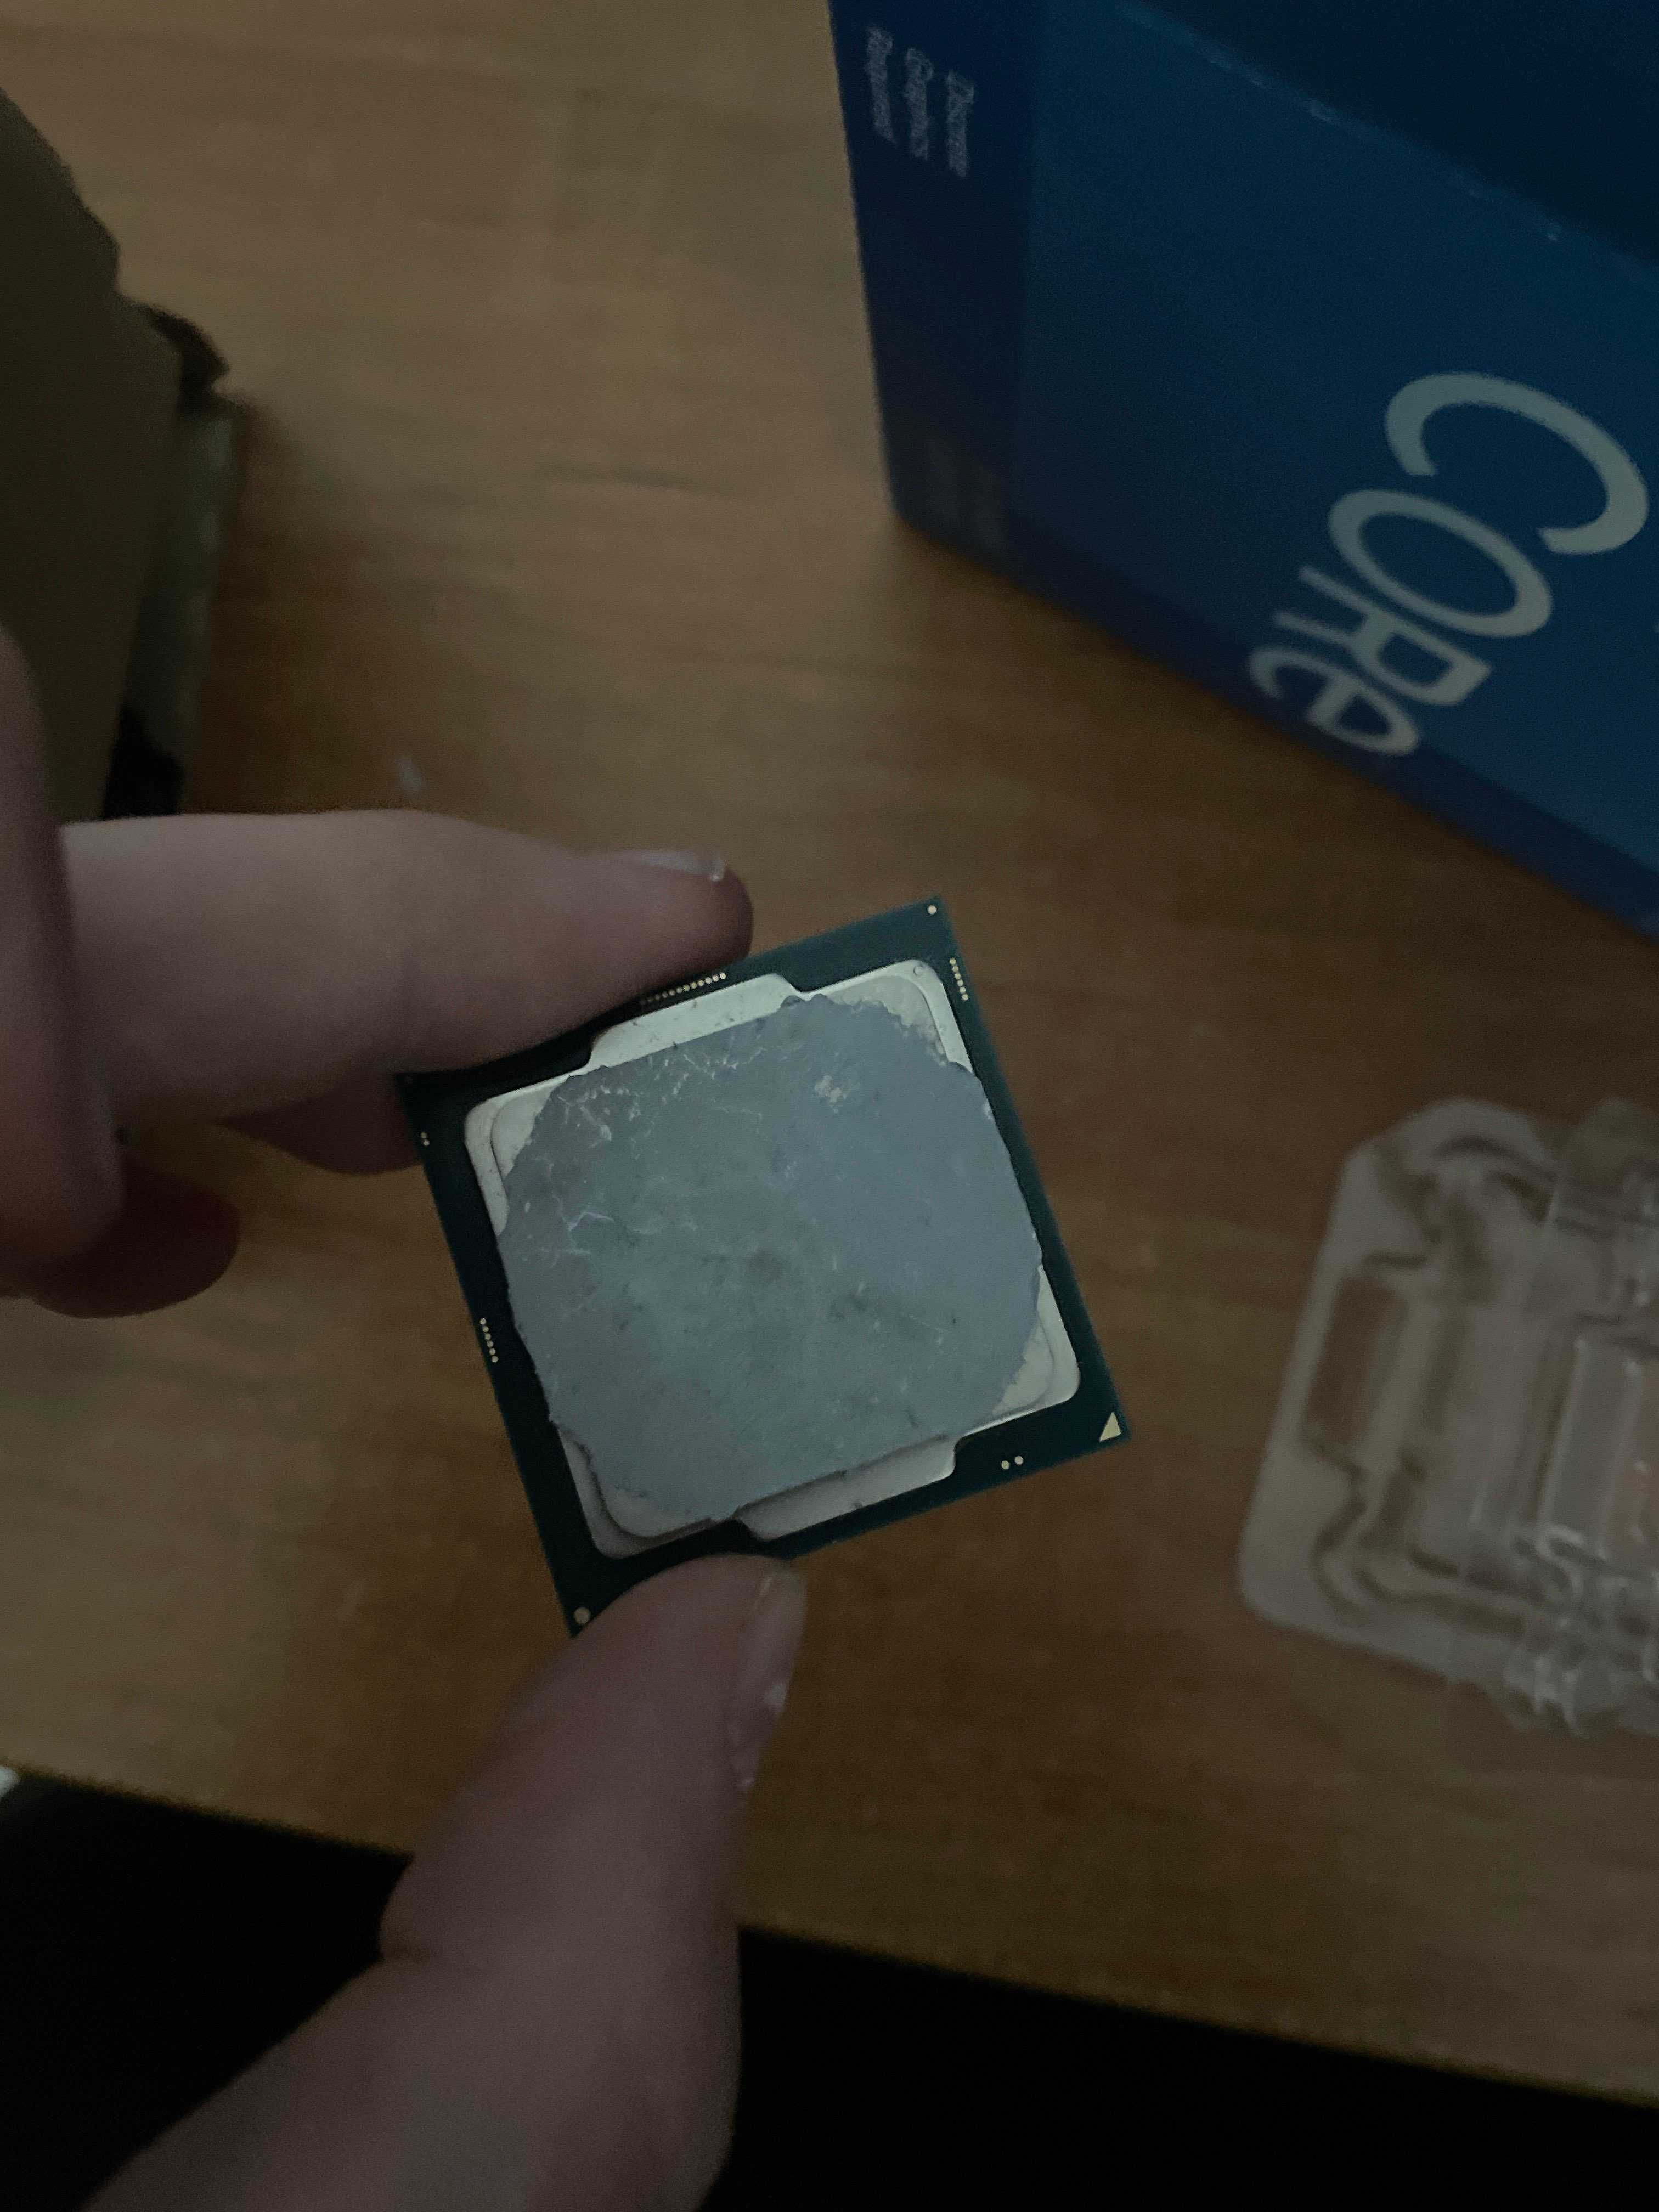 Intel Core i3-8100 używany + płyta H310M pro-vd + chłodzenie